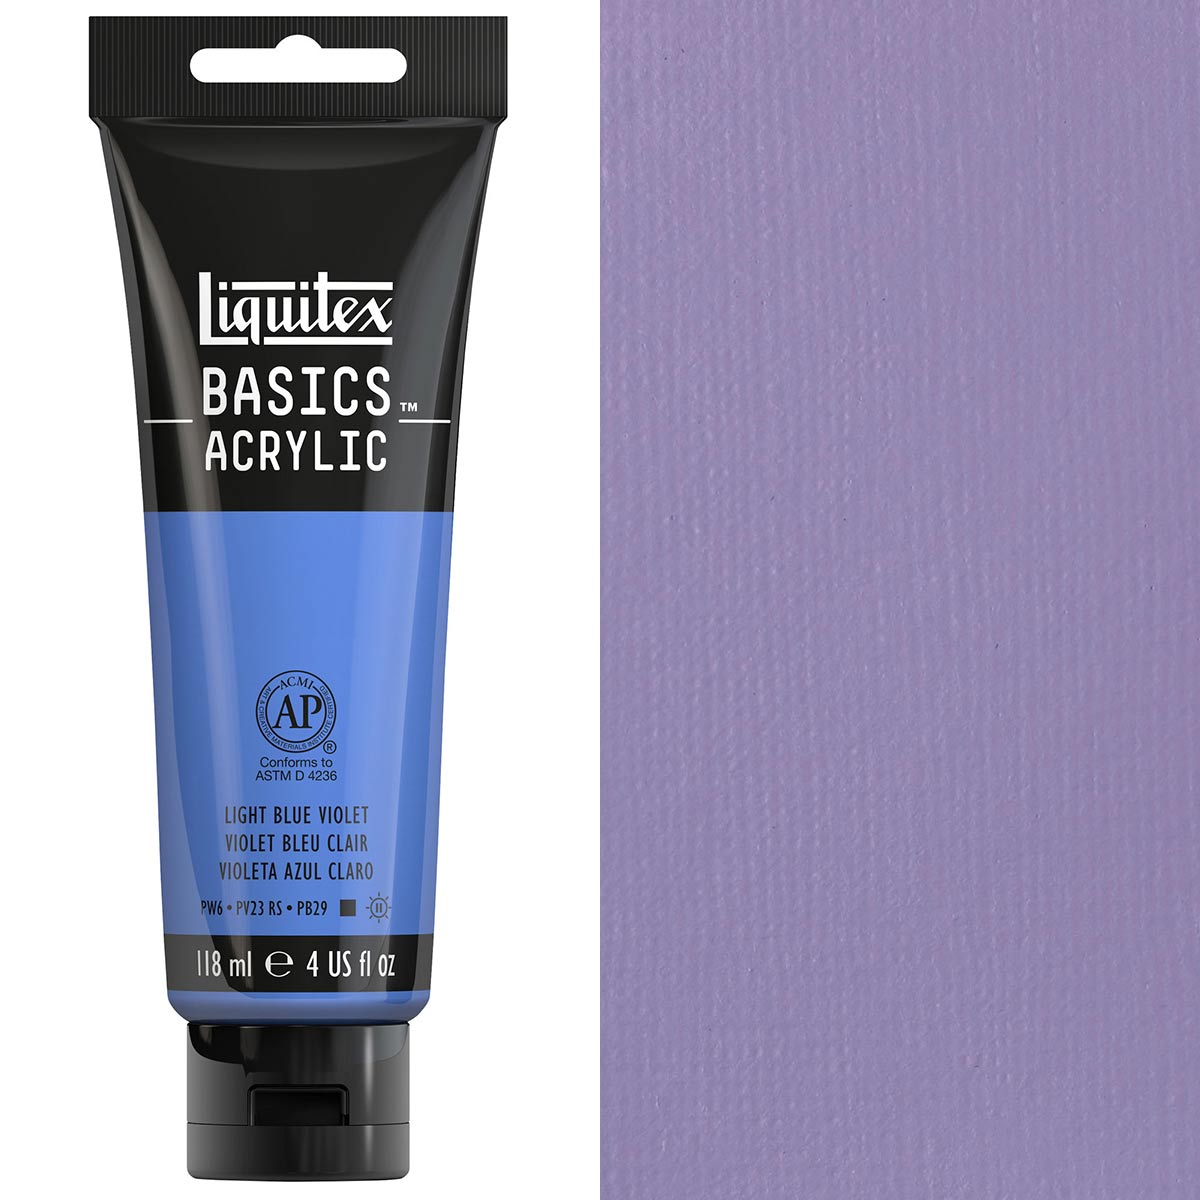 Liquitex-Couleur Acrylique Basics-118ml-Bleu Clair Violet